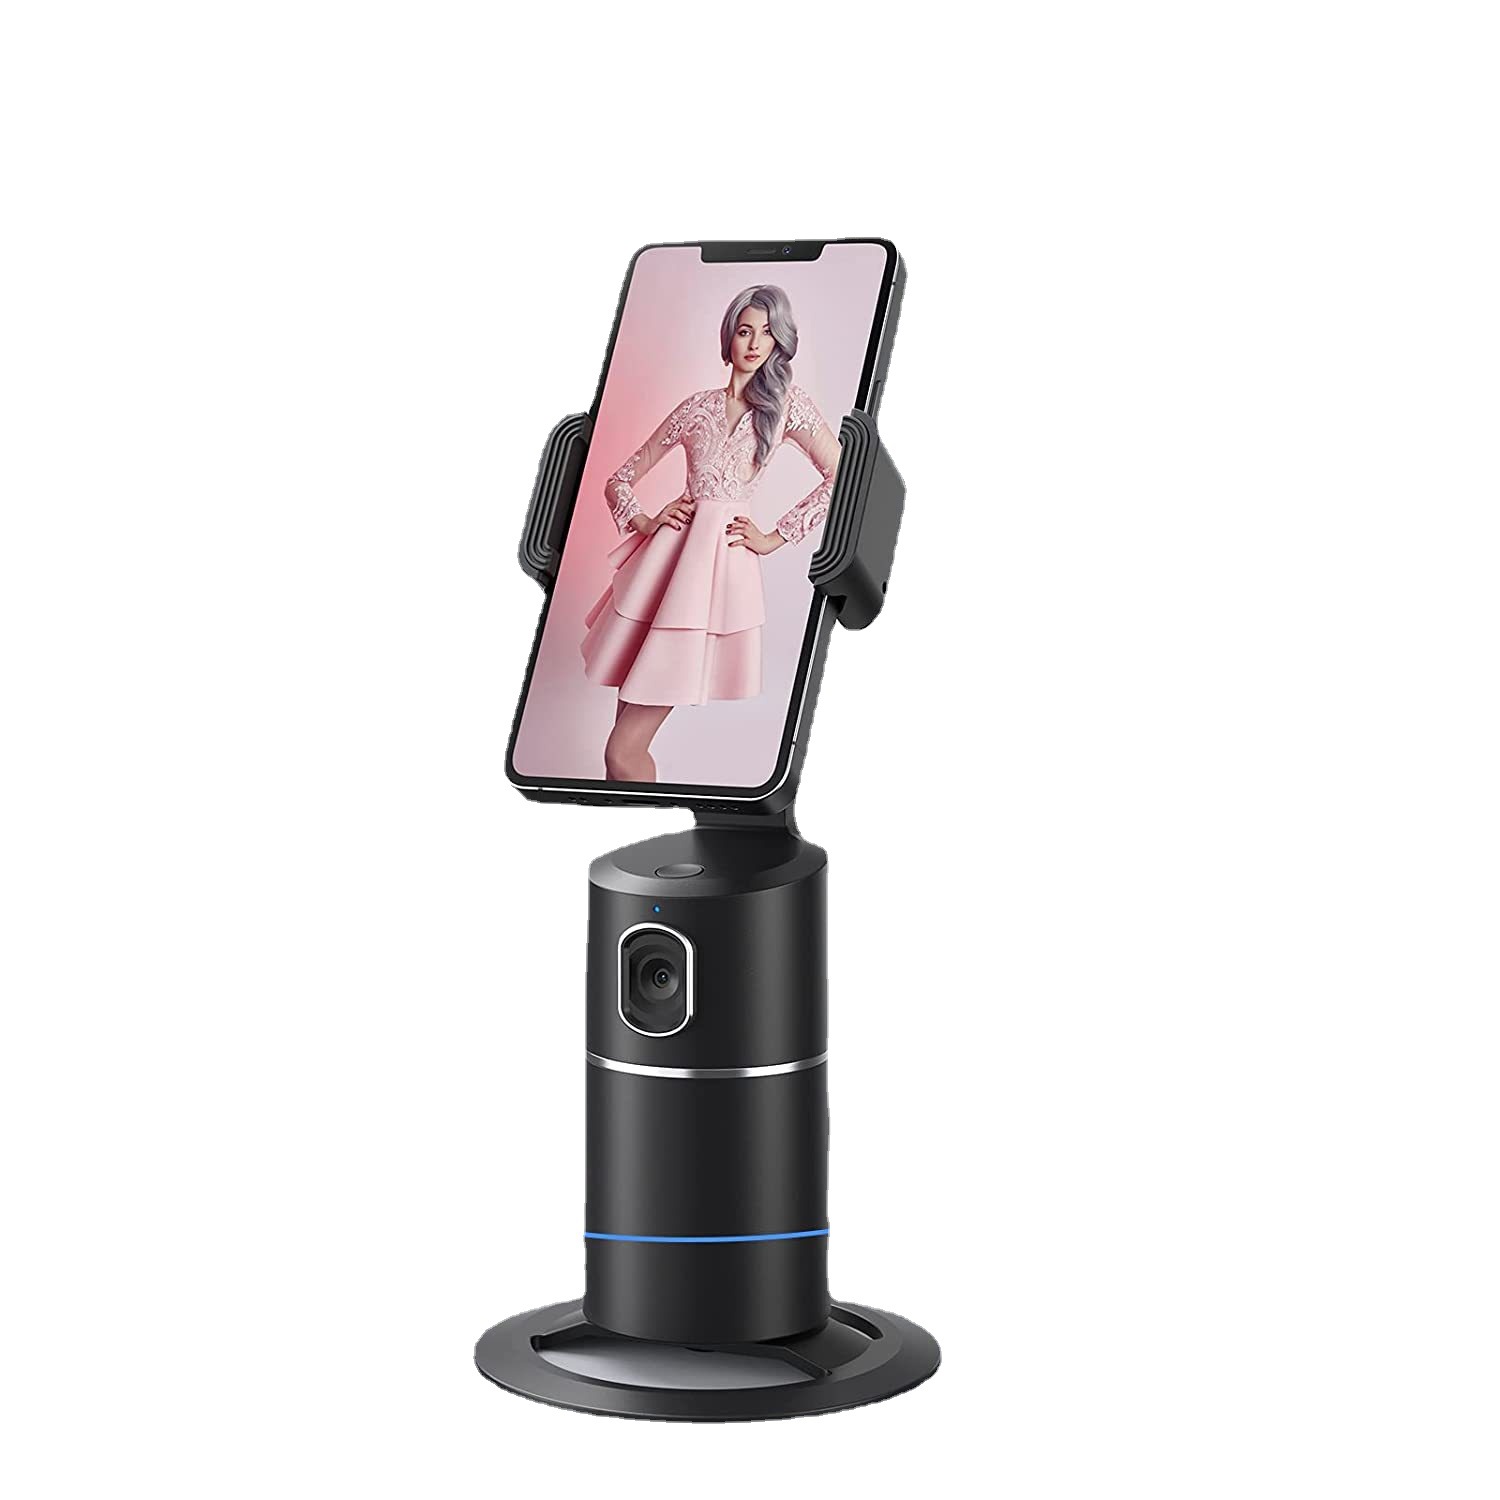 360-degree smart follow-up pan/tilt mobile phone selfie stick follow-up stand